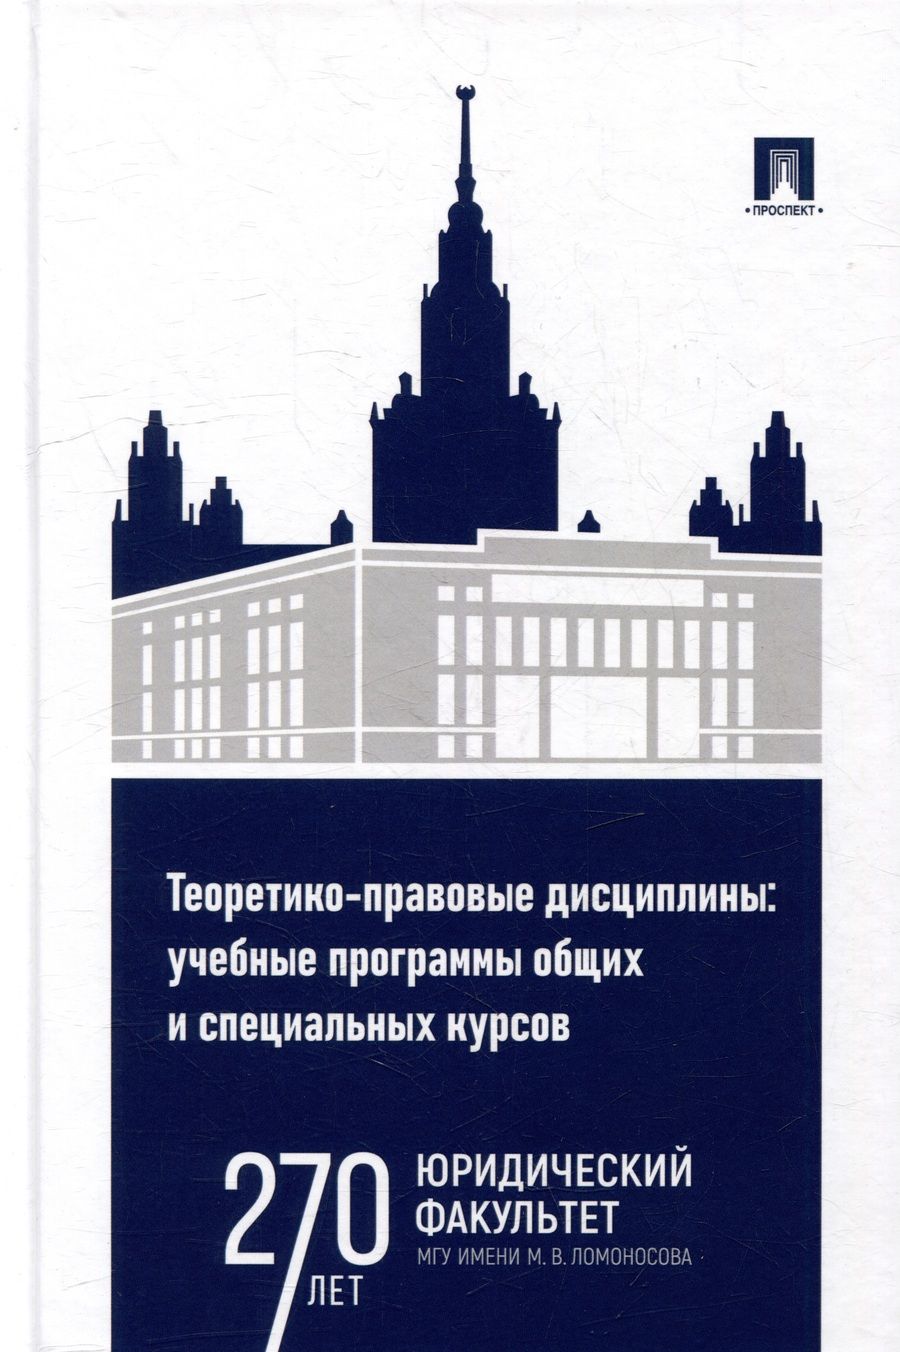 Обложка книги "Фролова, Воронин, Жуков: Теоретико-правовые дисциплины. Учебные программы общих и специальных курсов"